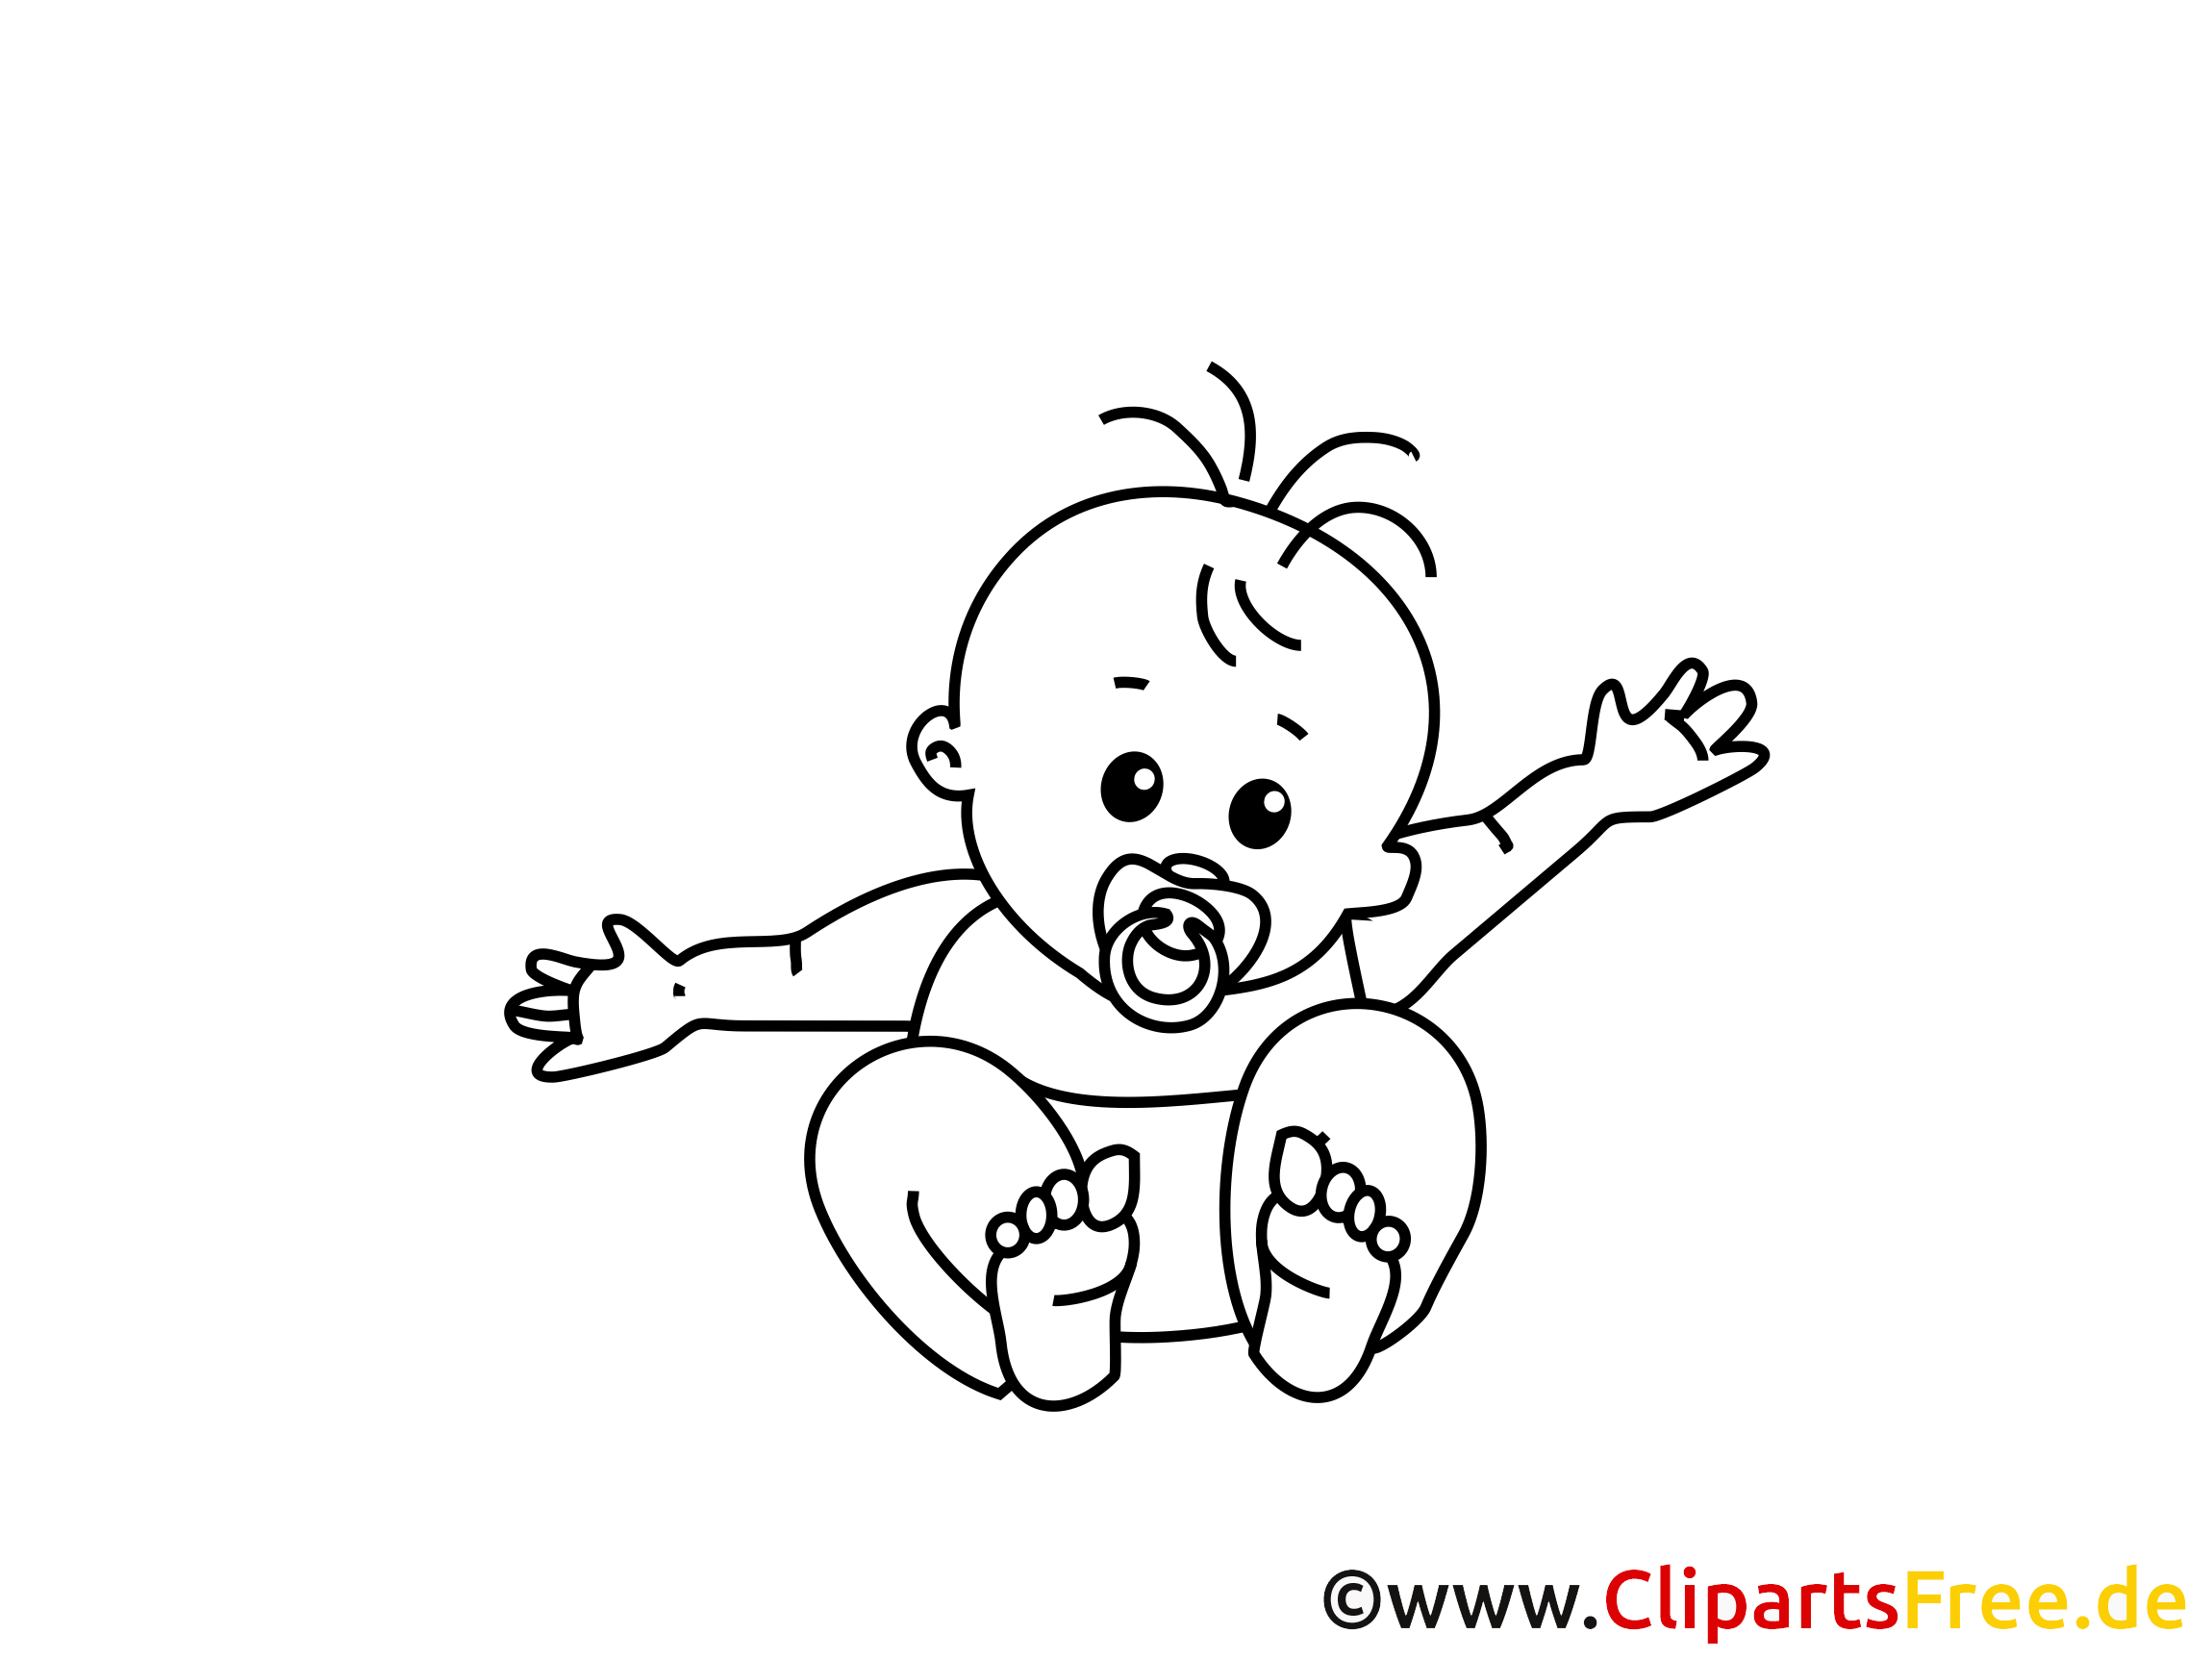 clipart gratuit bébé - photo #20